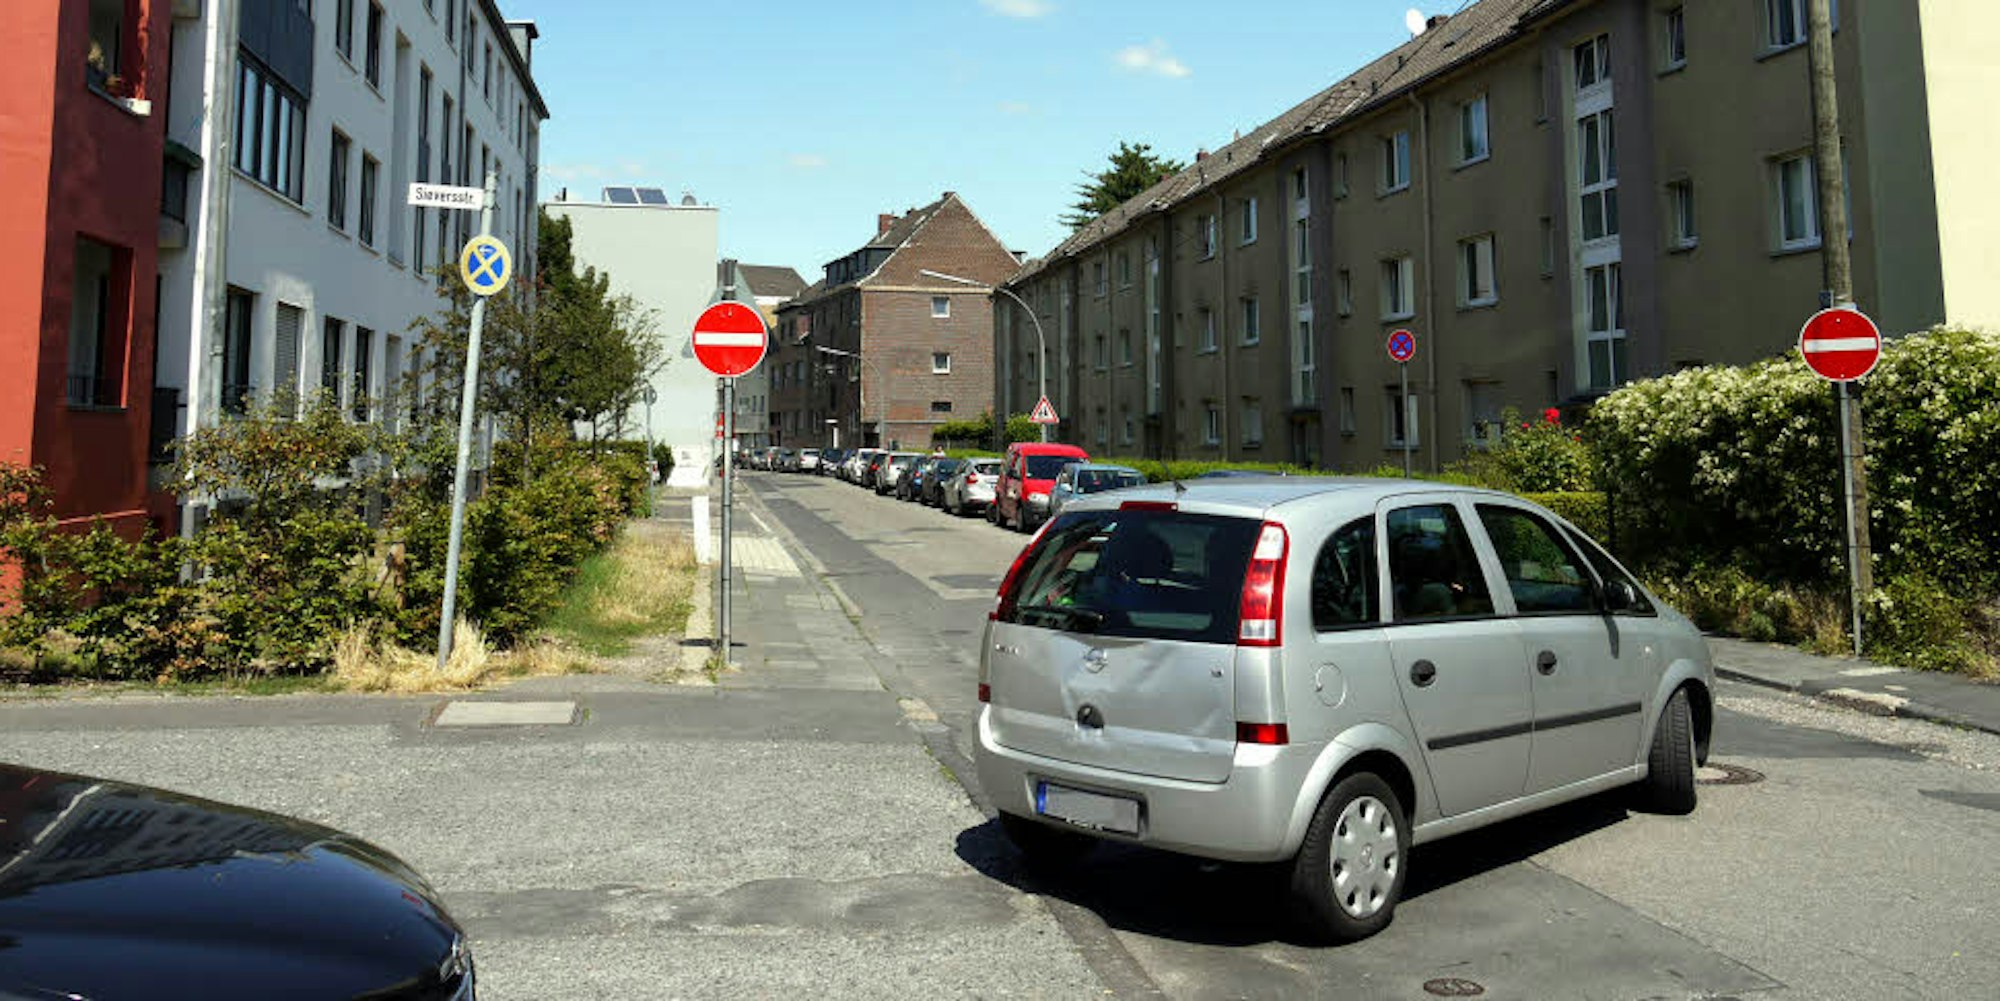 Trotz Einfahrtverbot nutzen viele Autos die Neuerburgstraße.